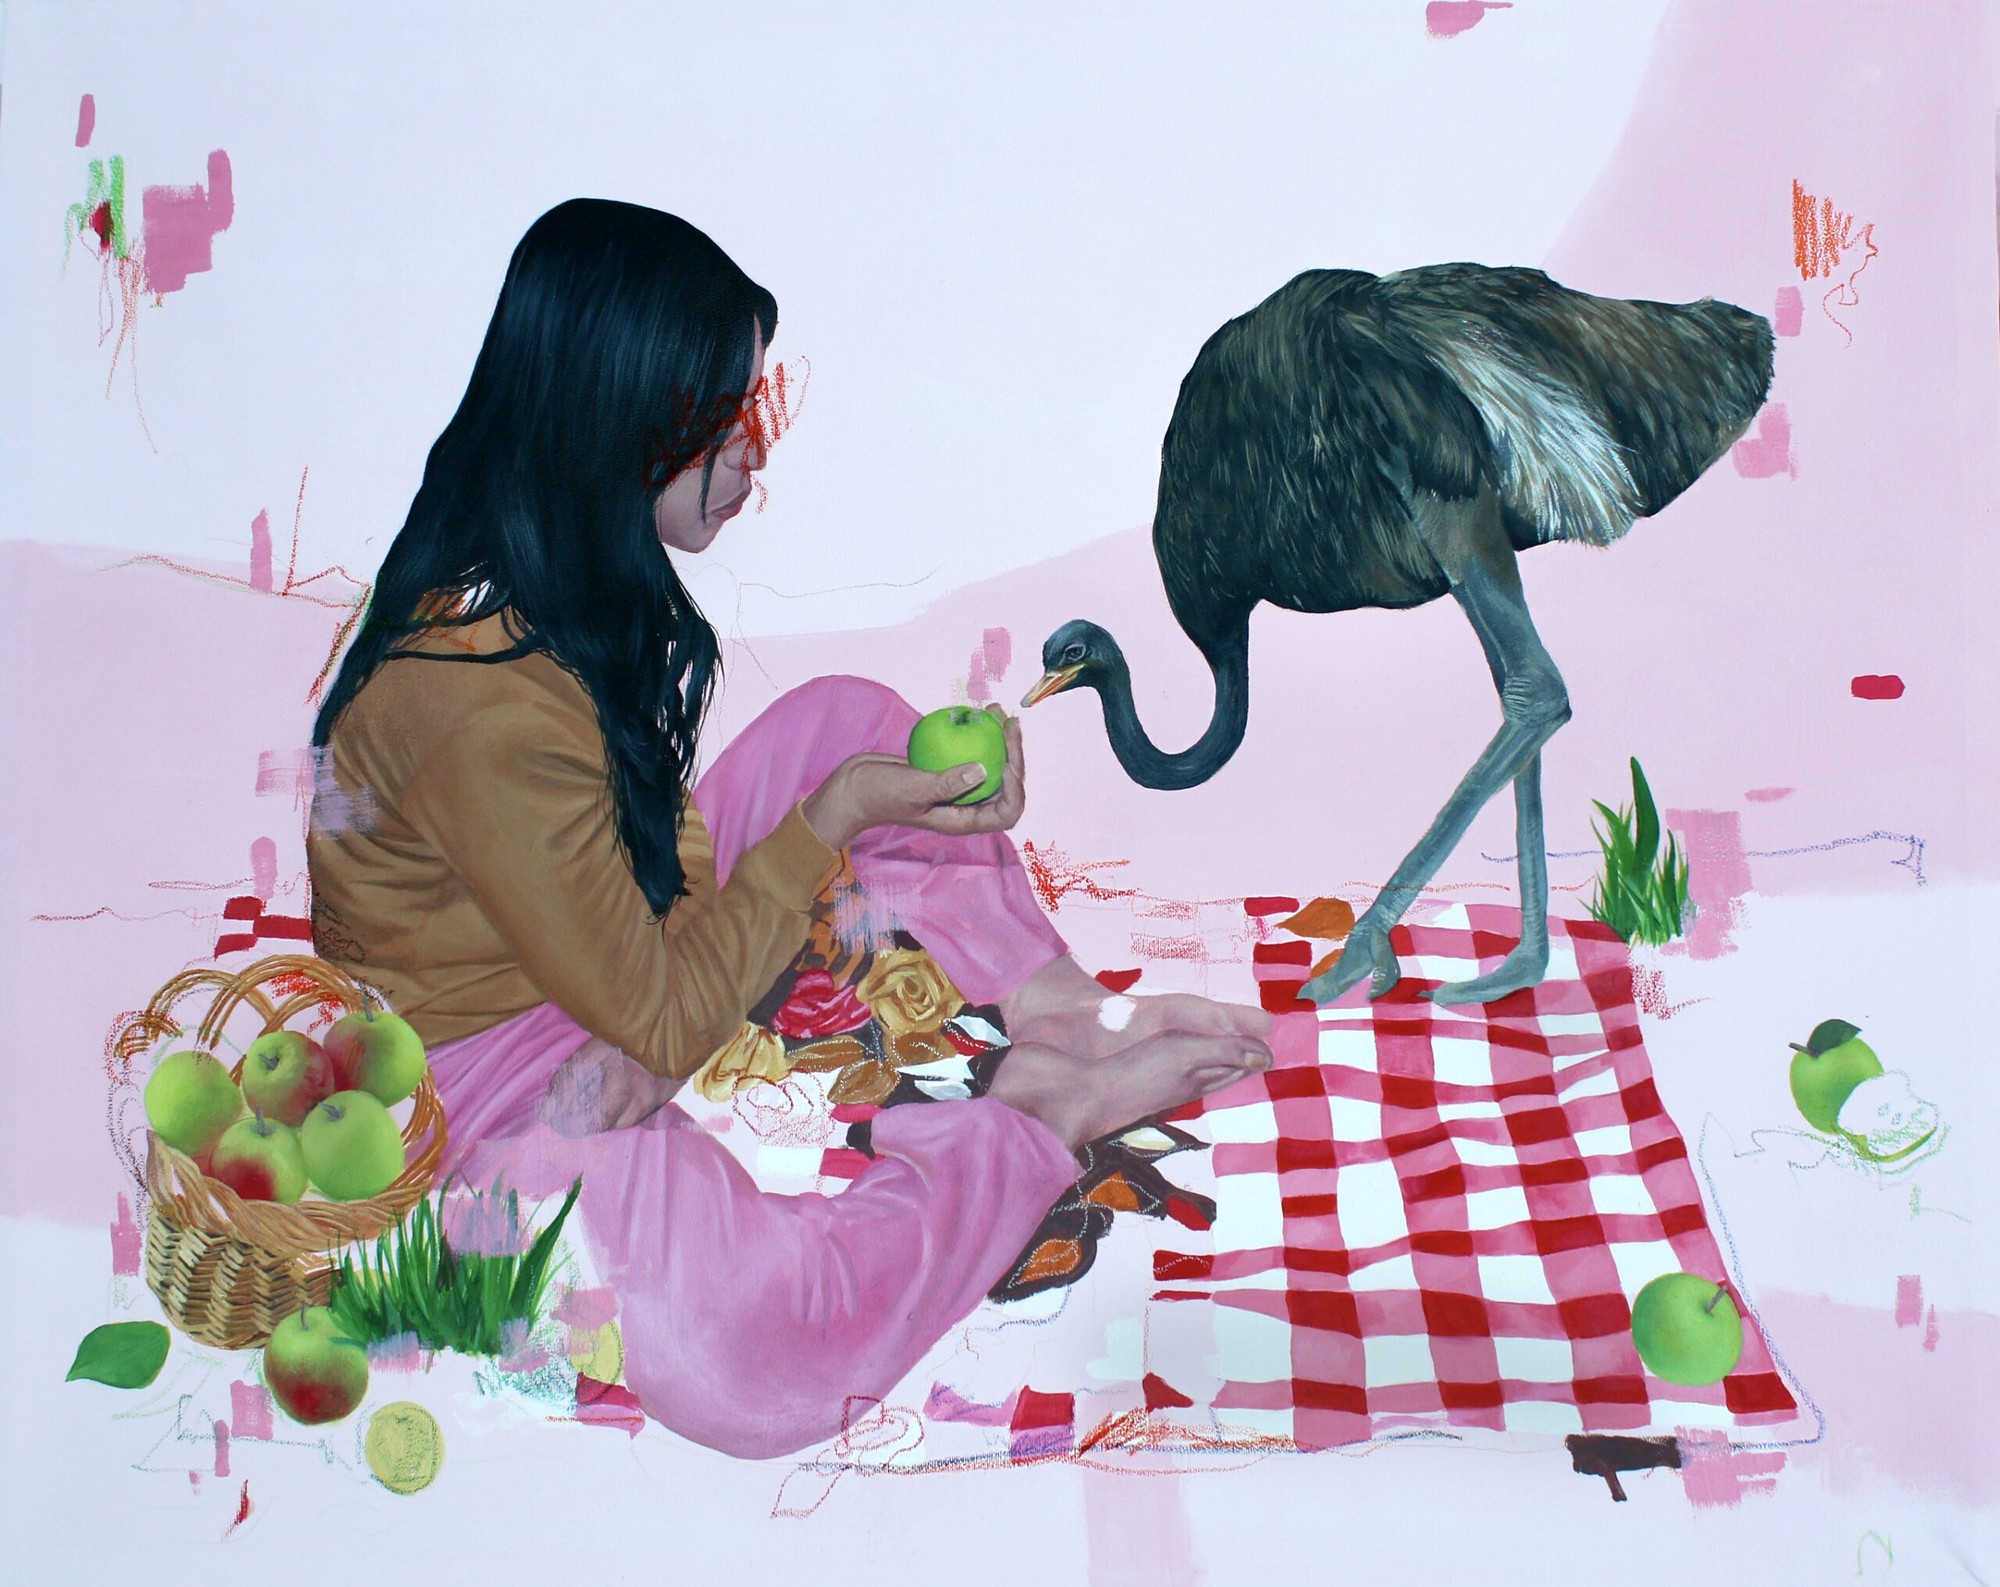 Rahma Lhoussig - Blended, 2022 - Mixed media on canvas - 80x100 cm